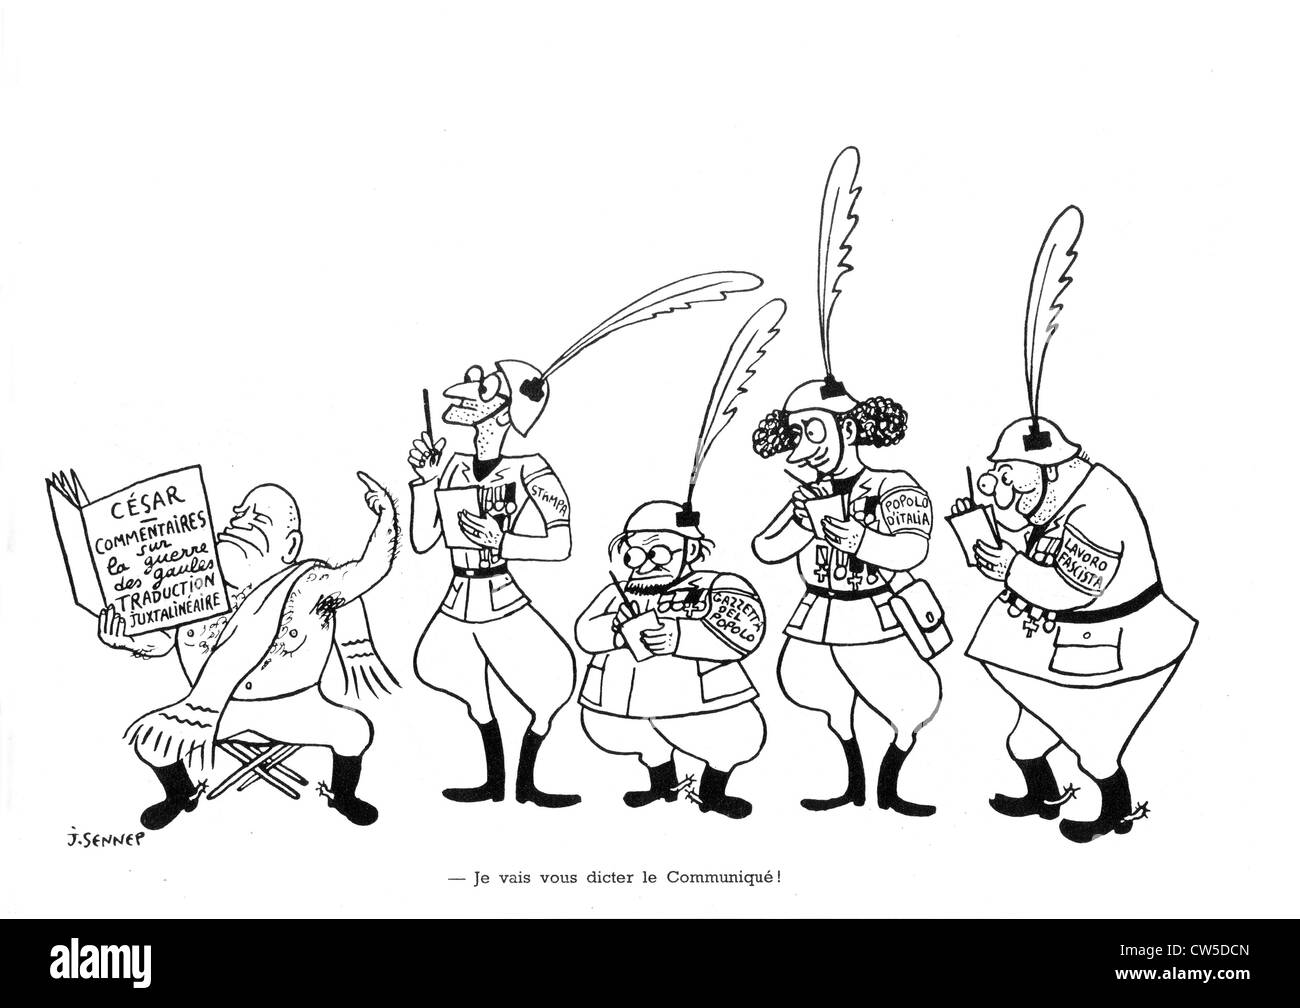 Vignetta satirica da Sennep circa Mussolini. in "La guerre en chemise  noire' ('guerra in camicia nera' Foto stock - Alamy